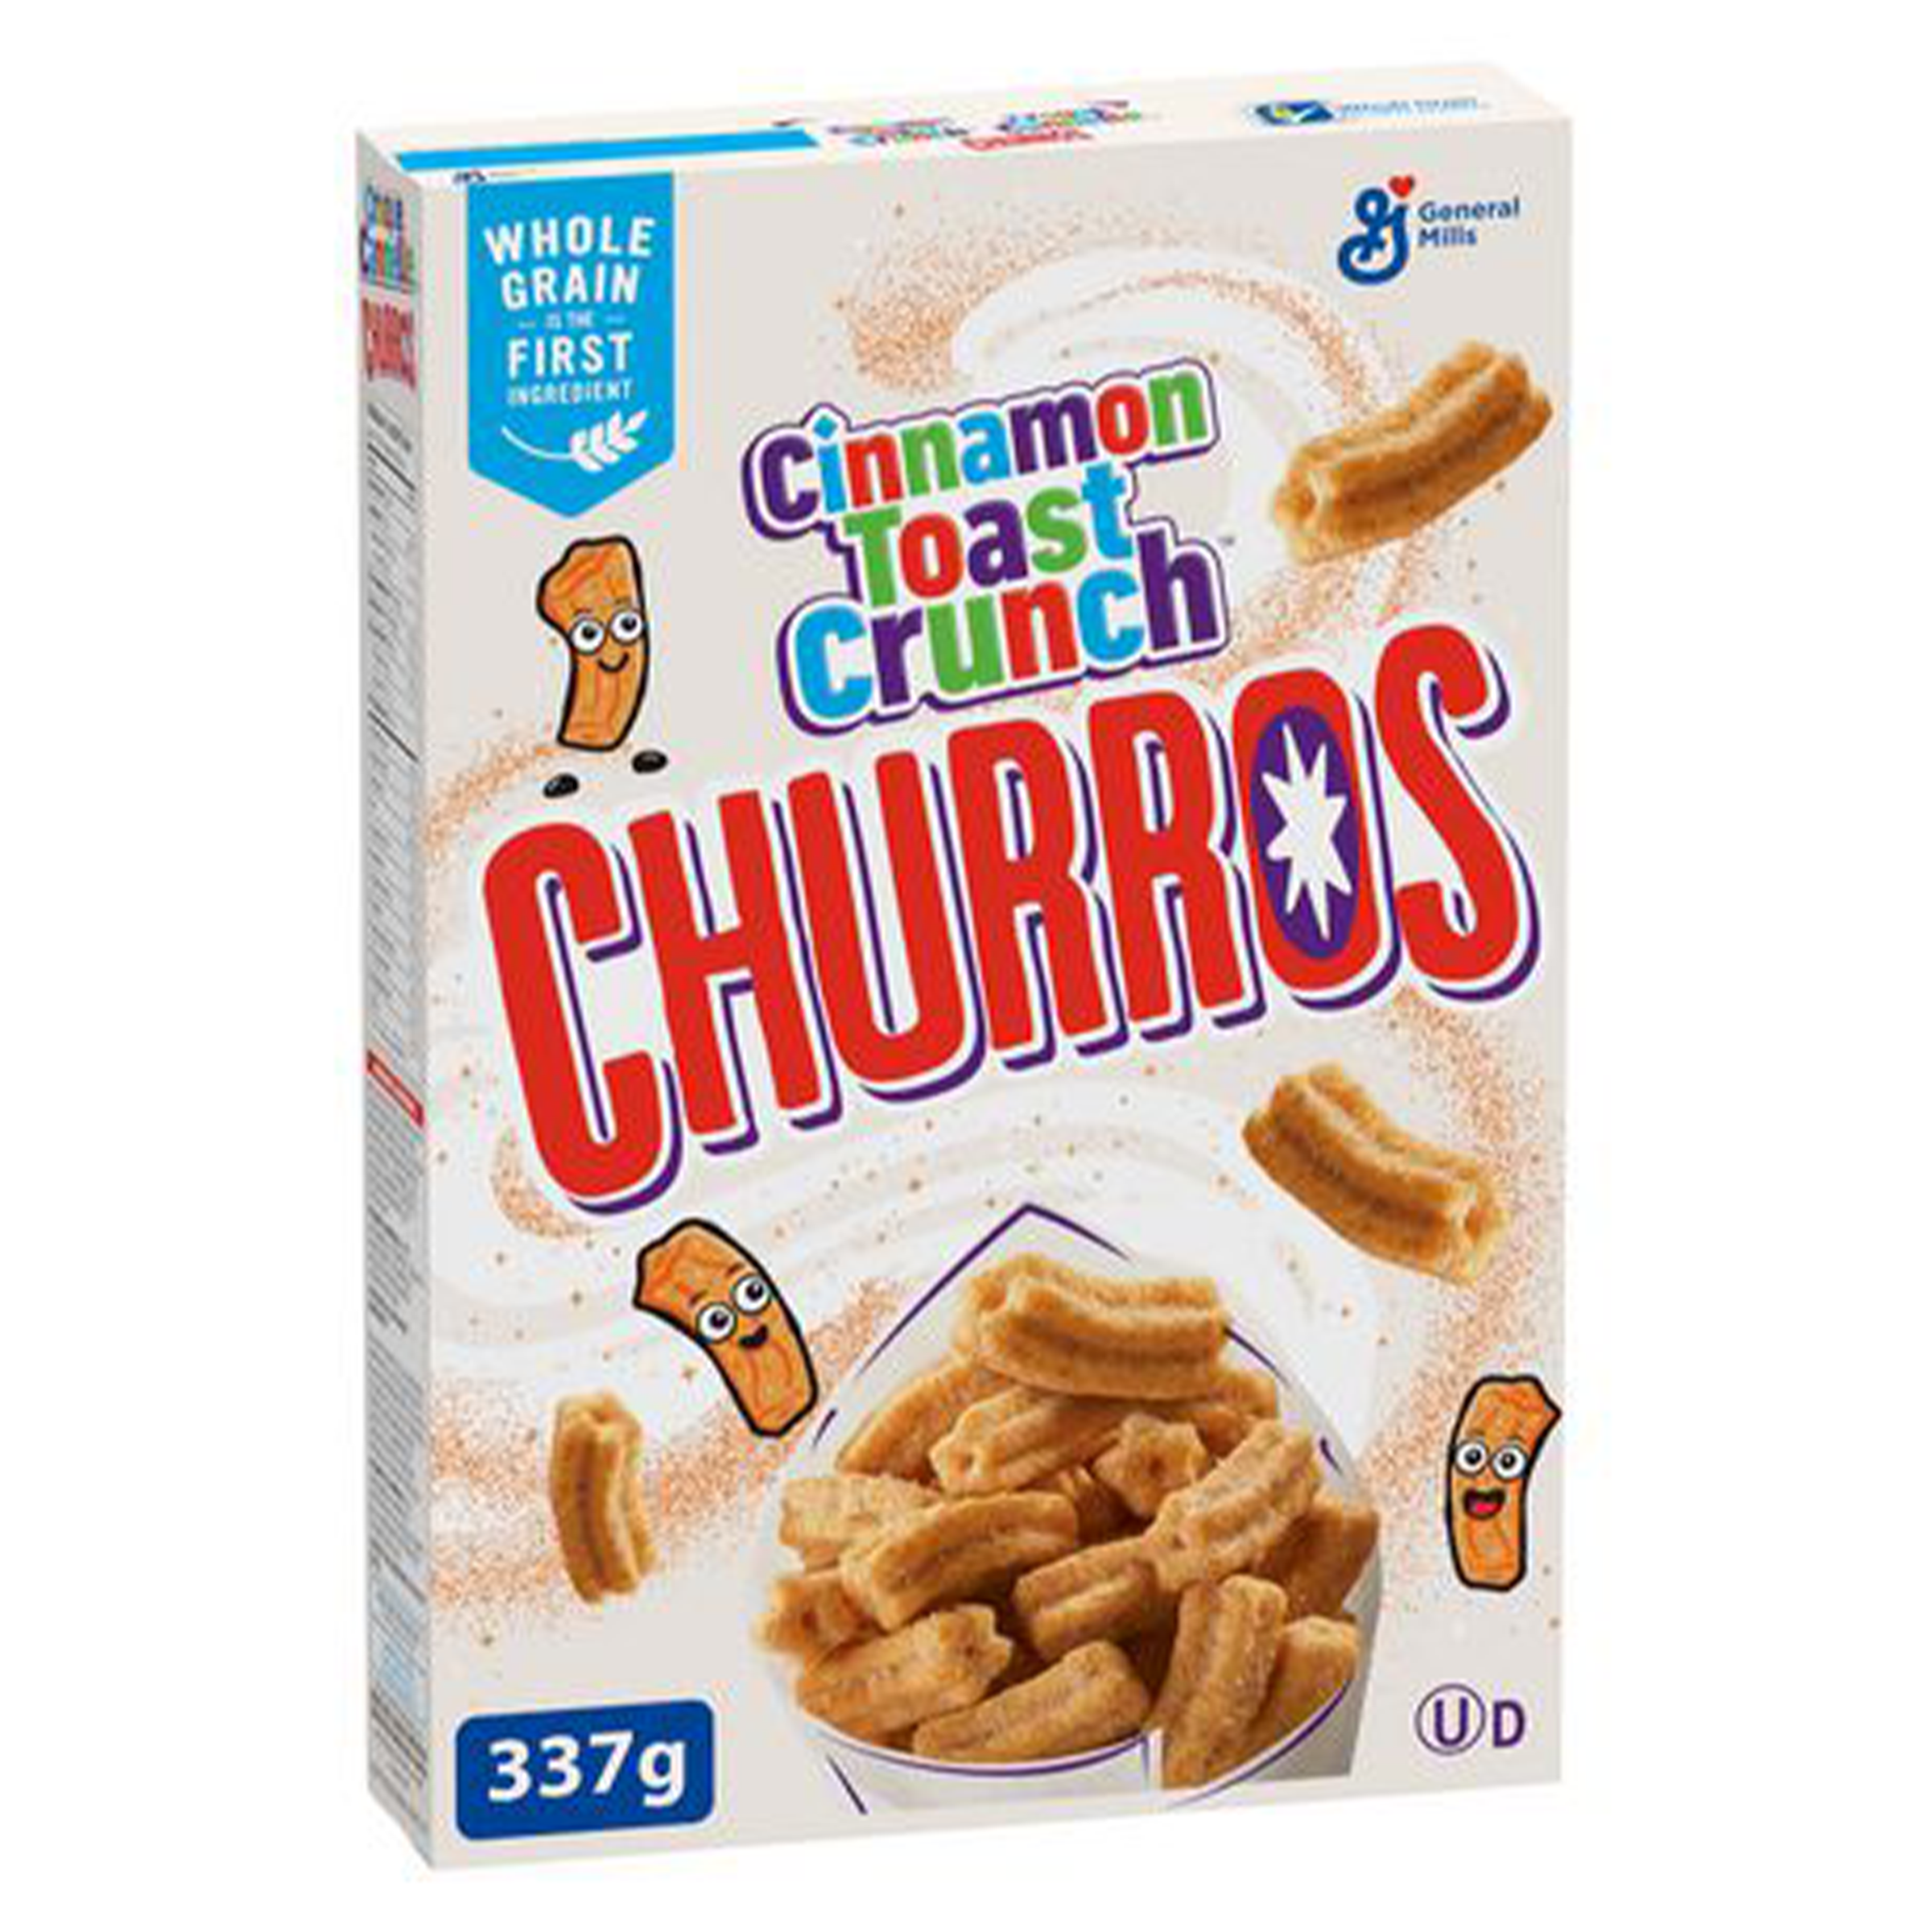 Cinnamon Toast Crunch - Churros